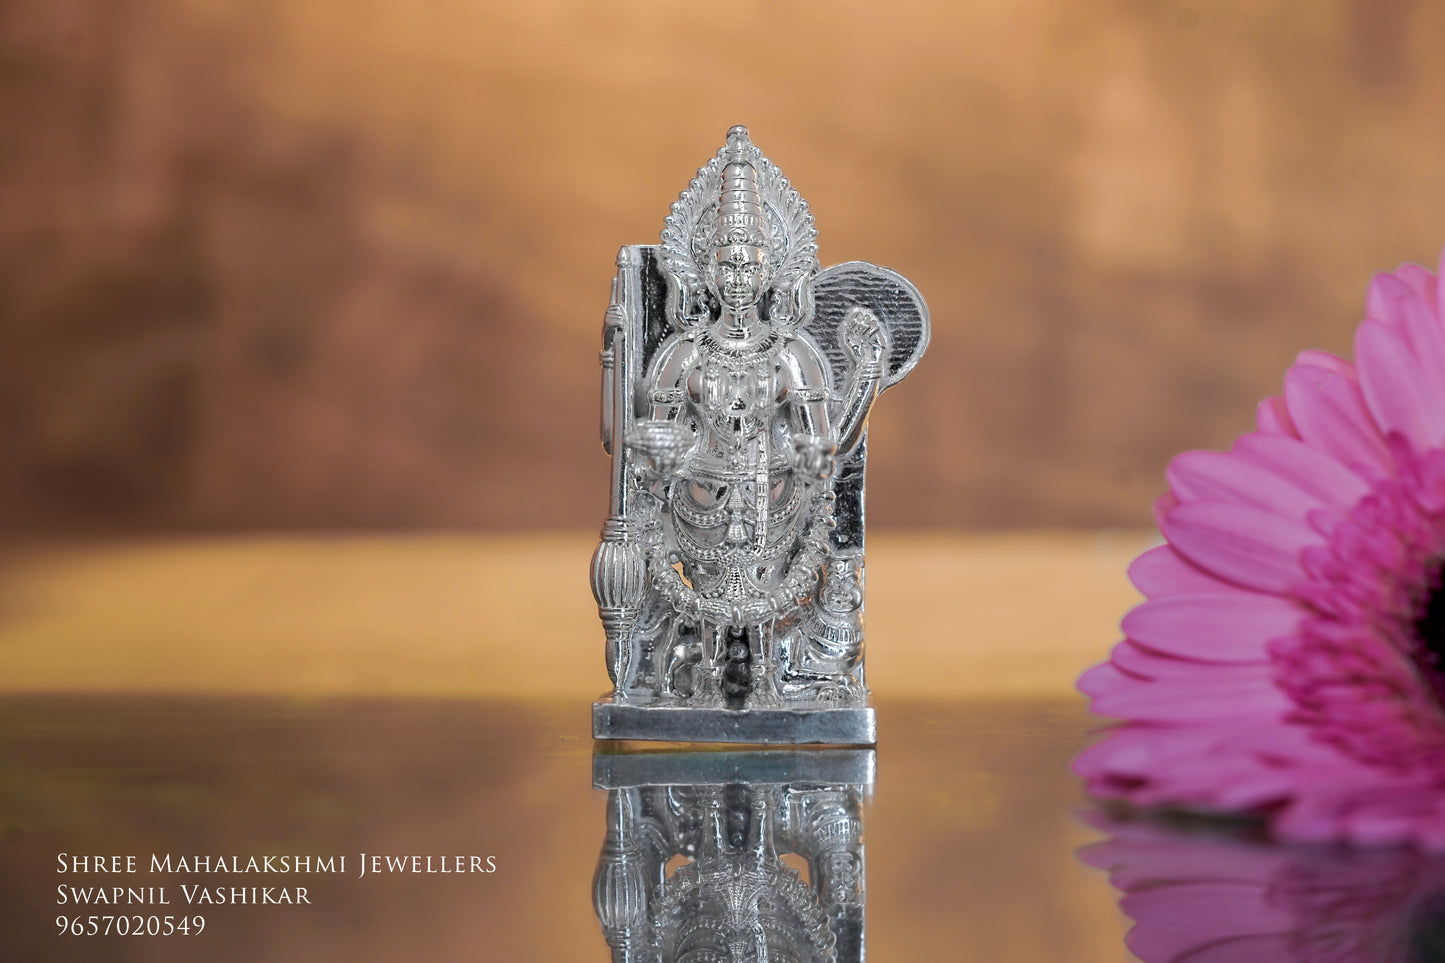 Kolhapur Mahalaxmi mul swarup silver idol 3 inches